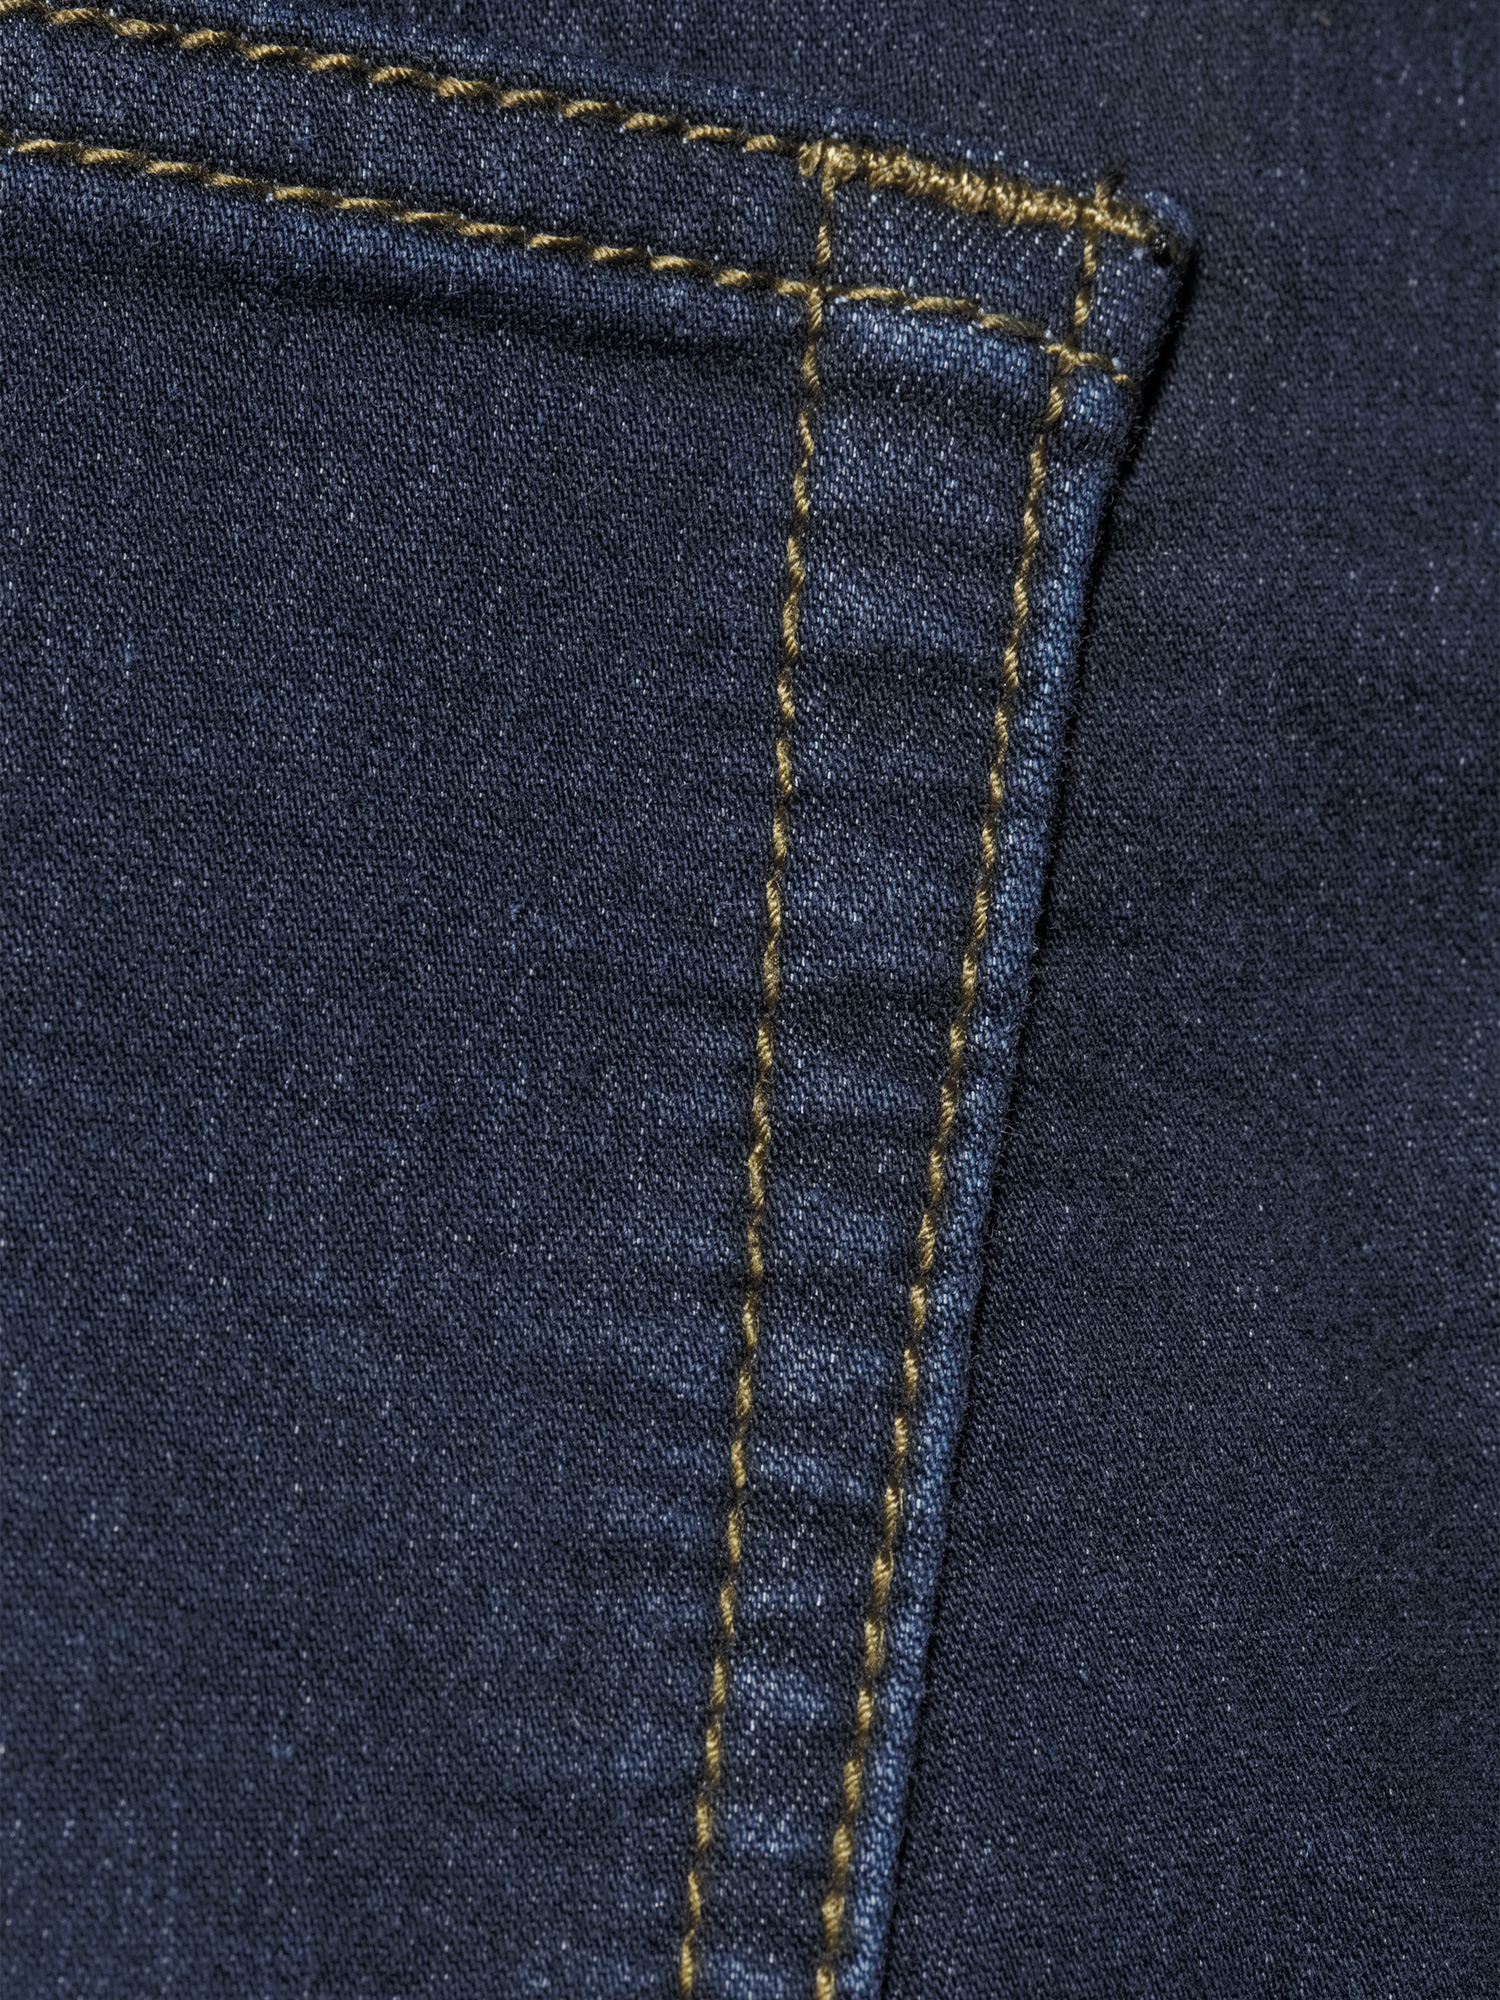 Tailor Vintage Men's Knit Denim Straight Fit Jeans - image 5 of 6